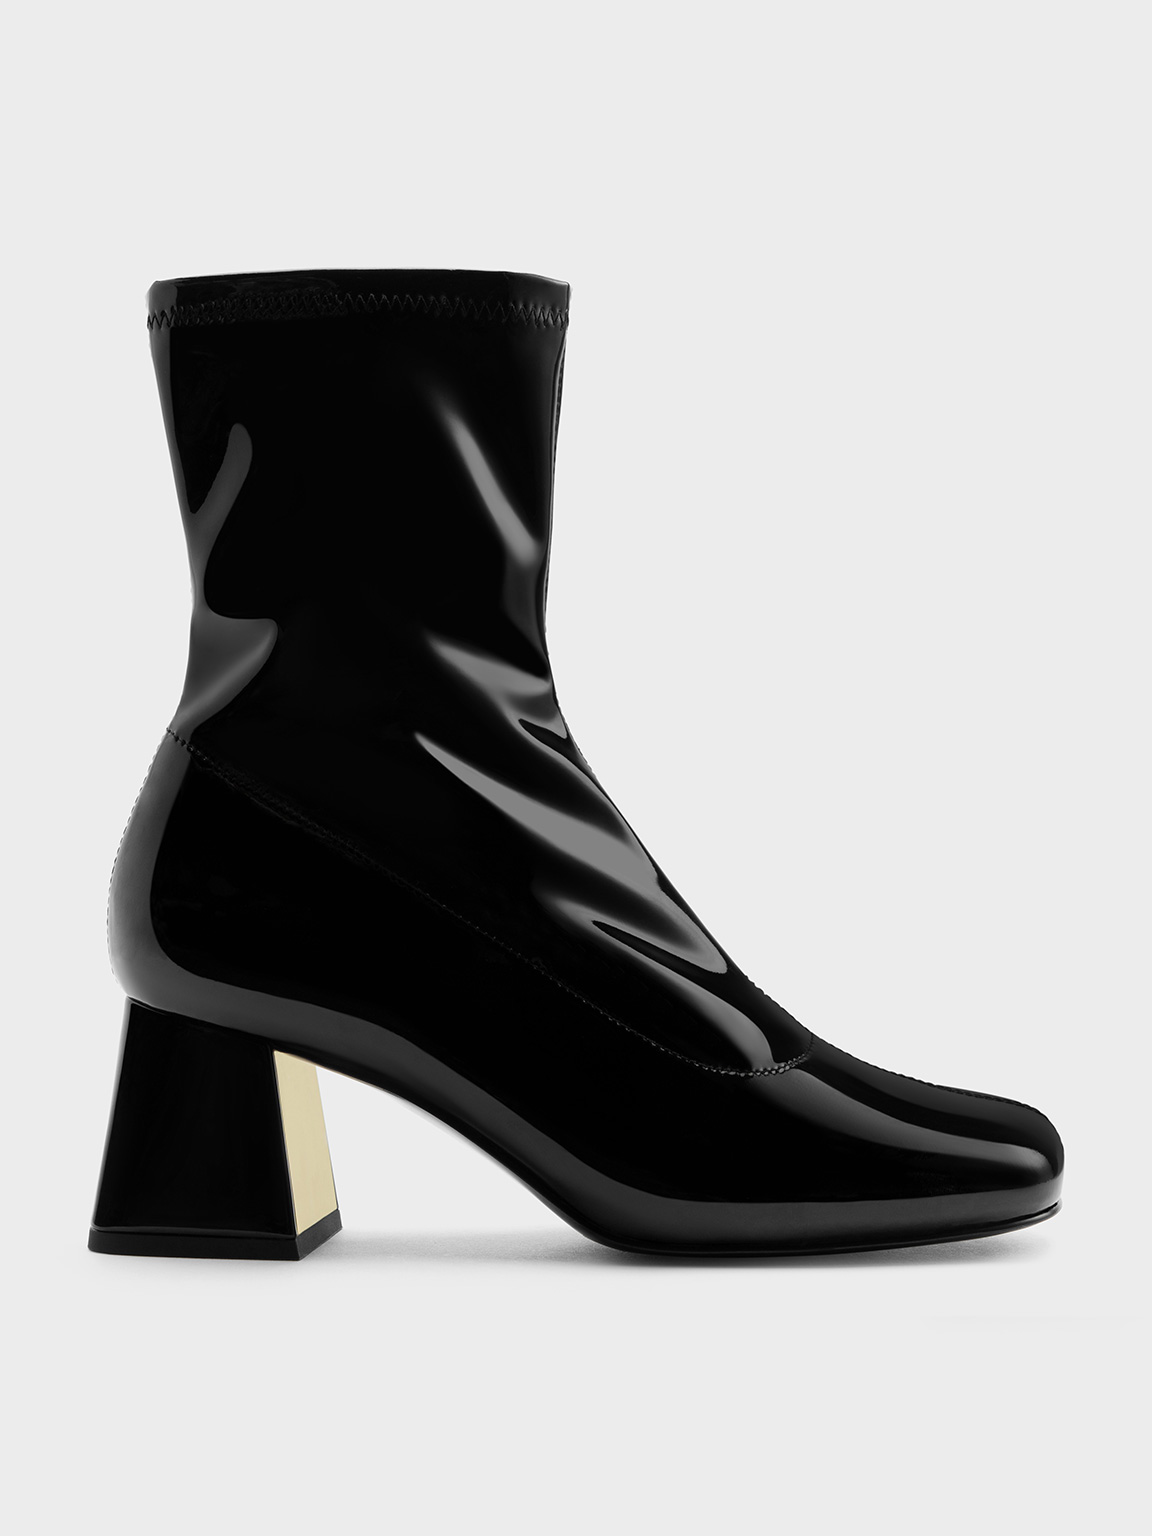 Le Silla Black Patent Leather Boots Titanium Stiletto Heel size 38.5 / 8.5  NEW | eBay